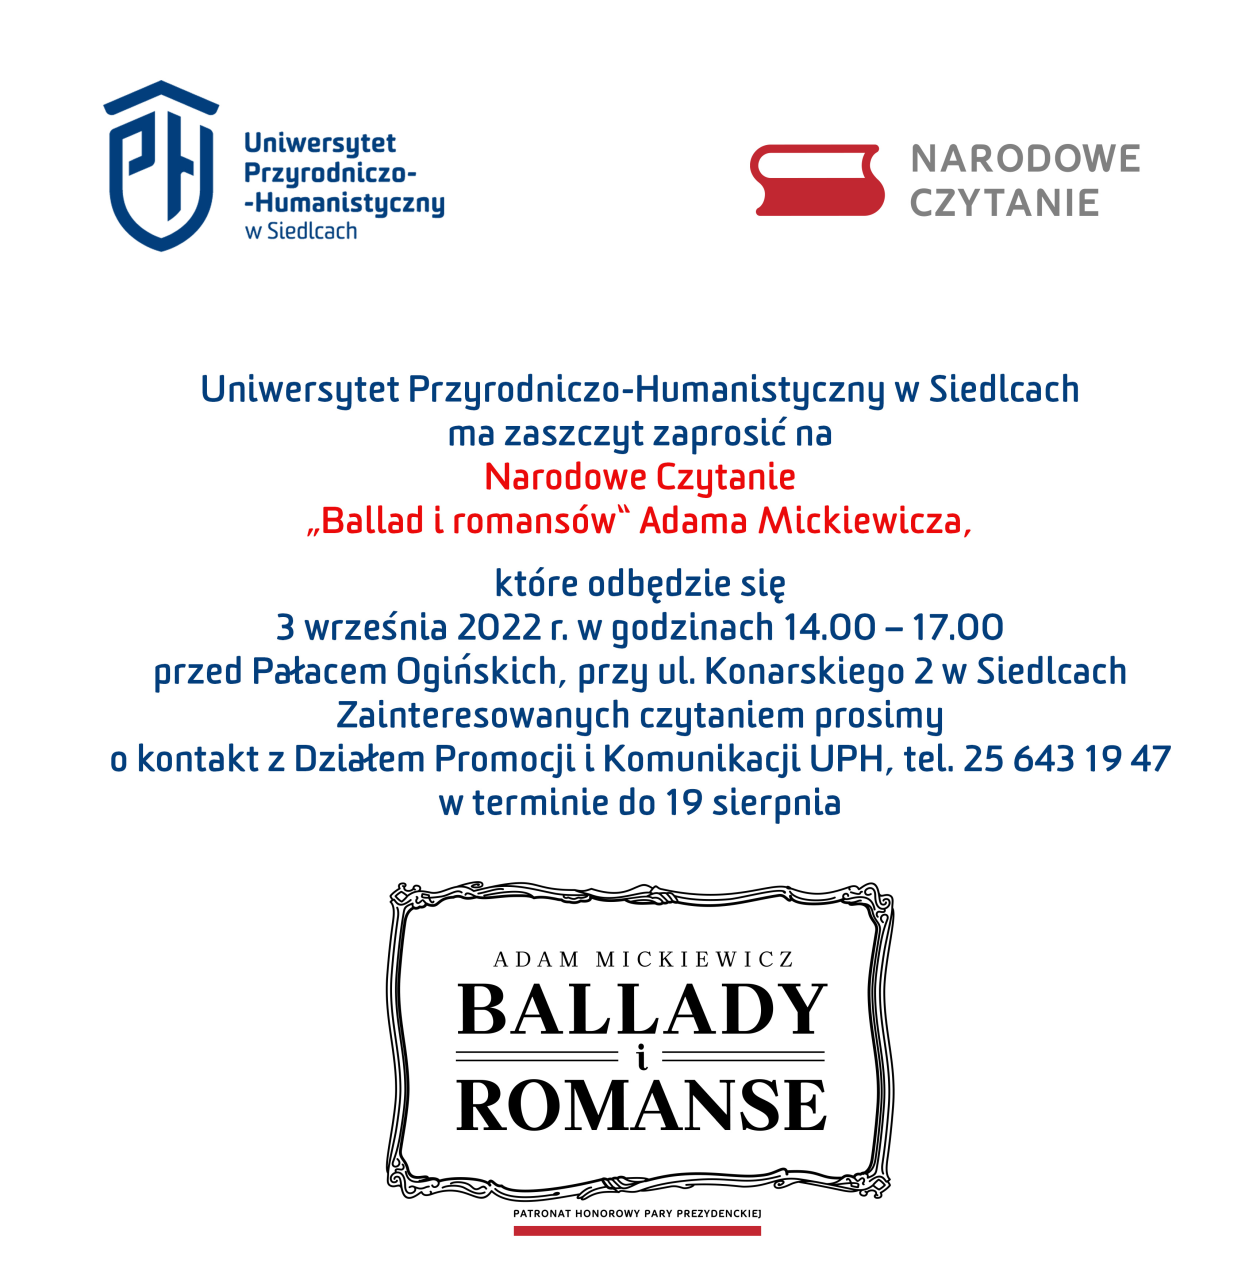 Zapraszamy na Narodowe Czytanie "Ballad i romansów" Adama Mickiewicza, które odbędzie się 3 września br. przed Pałacem Ogińskich, w godz. 14.00-17.00.